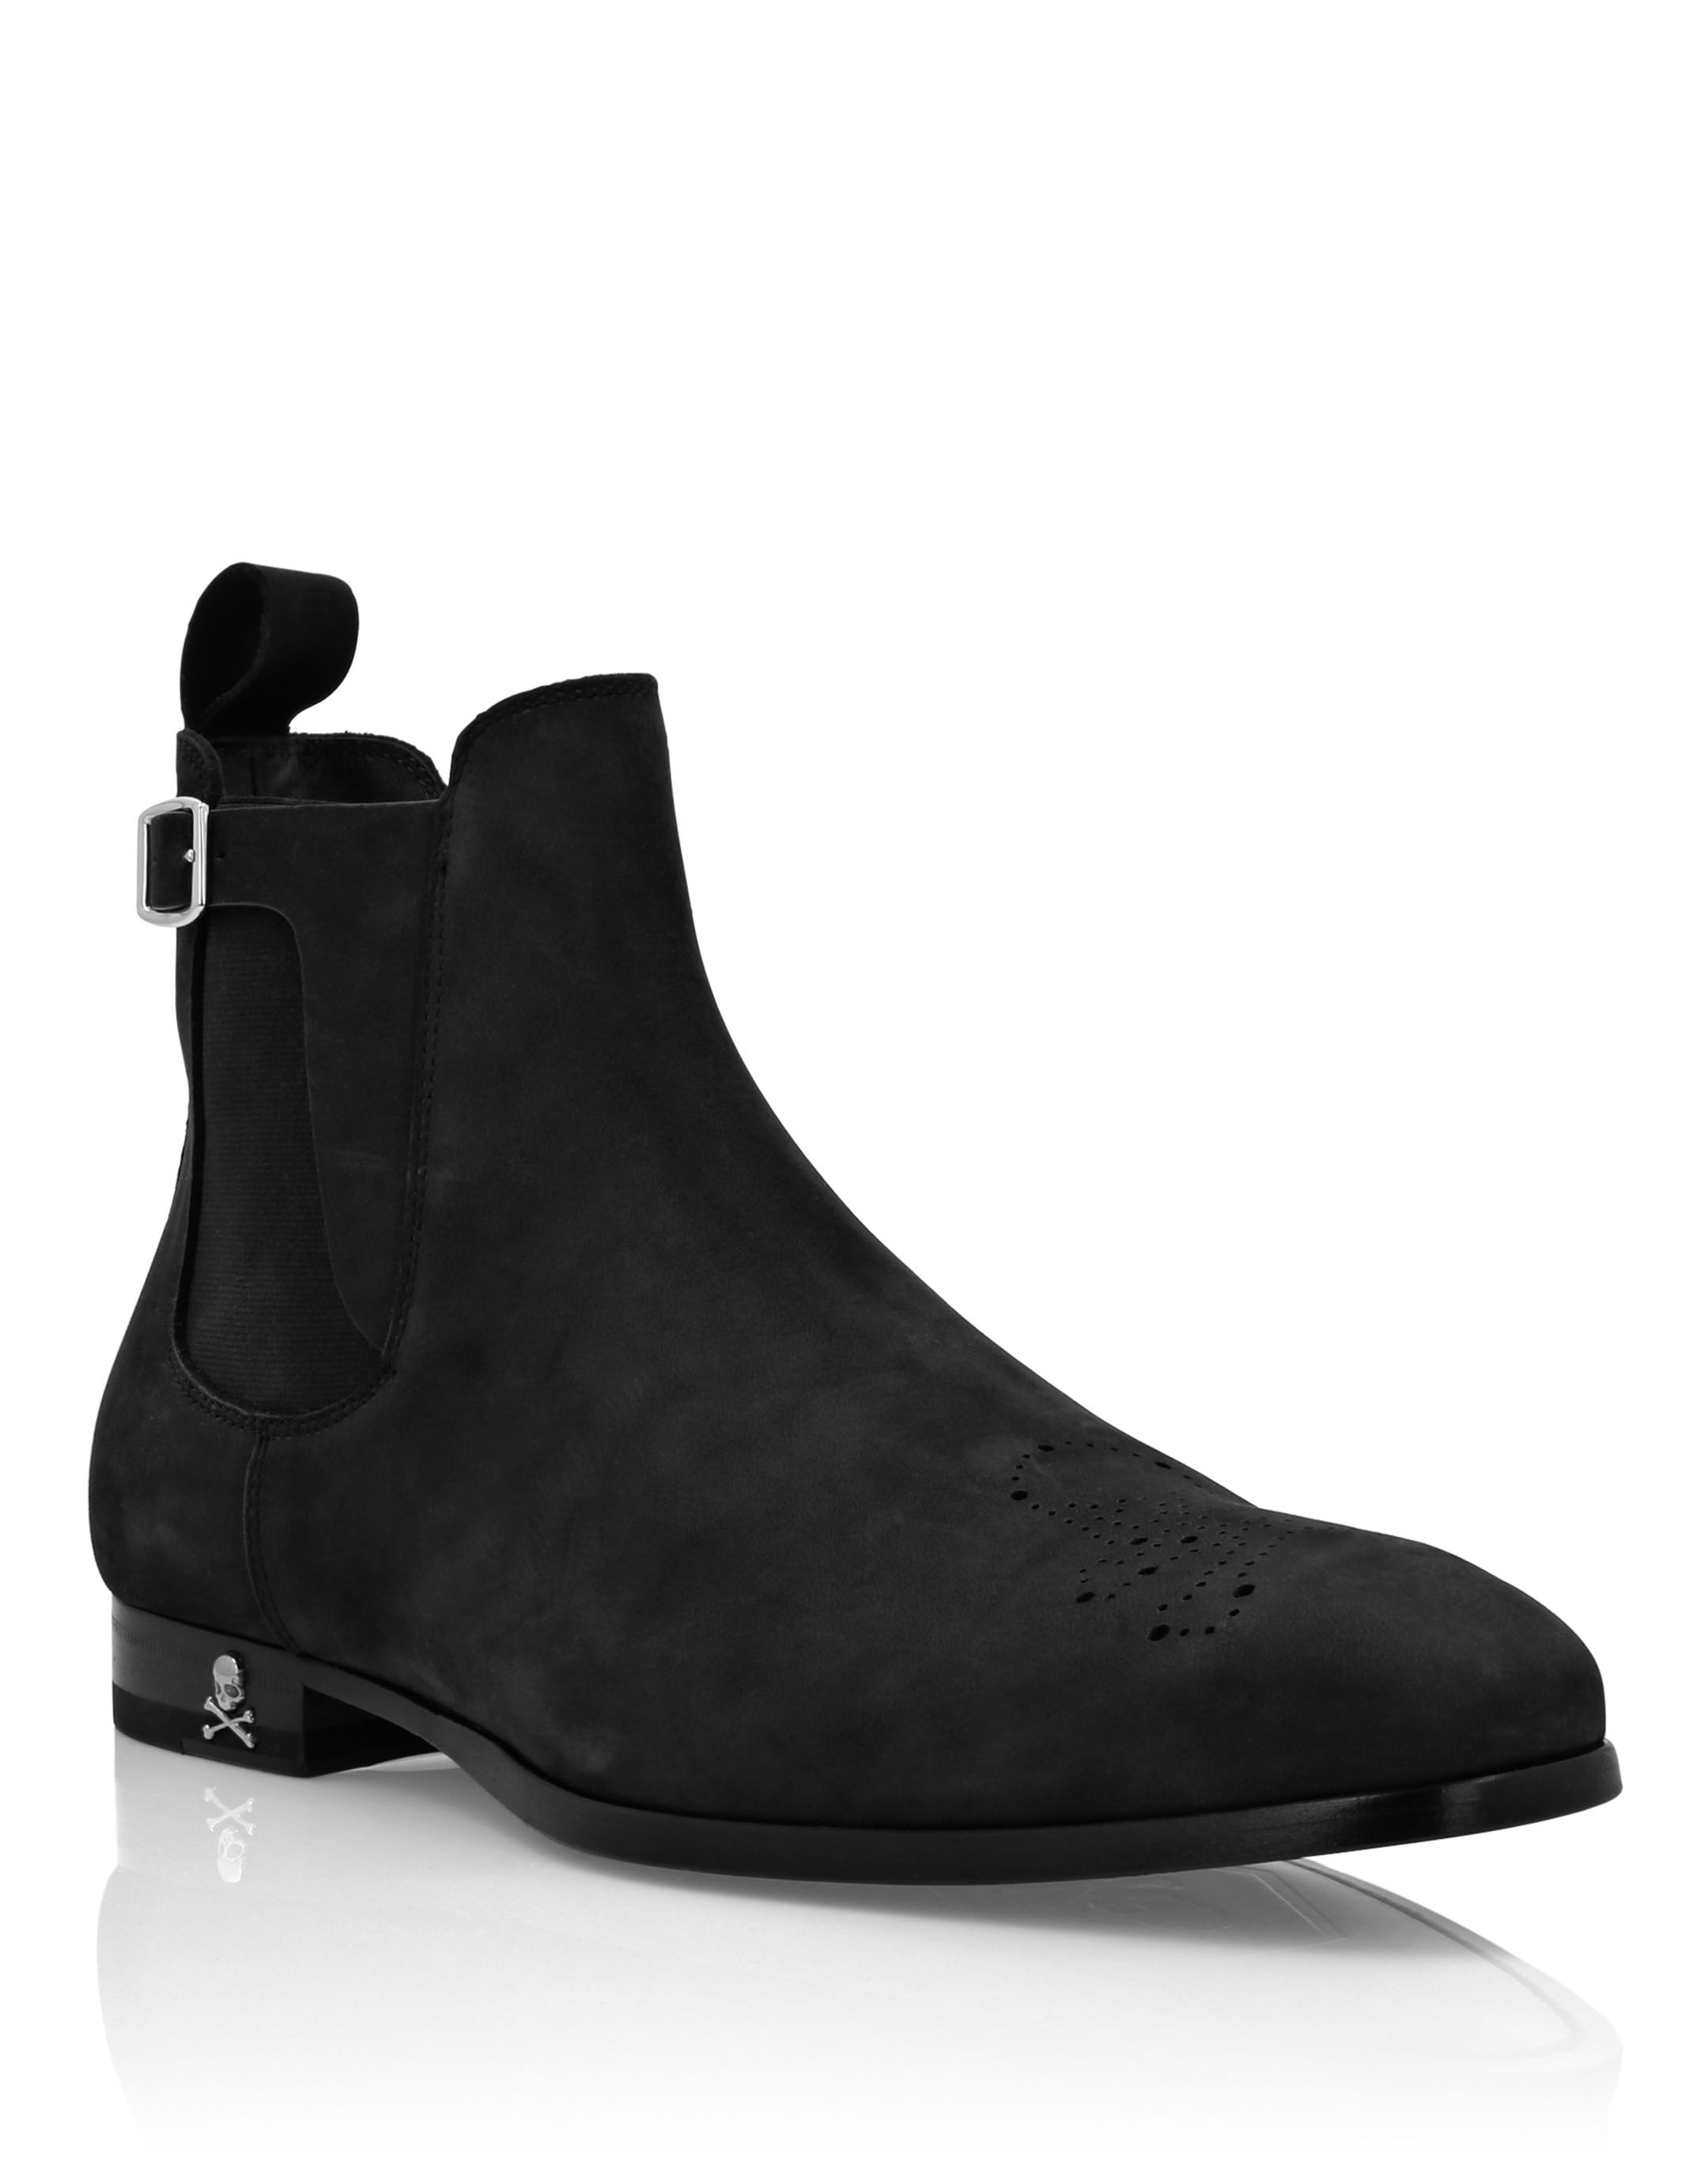 Men's Boots | Philipp Plein